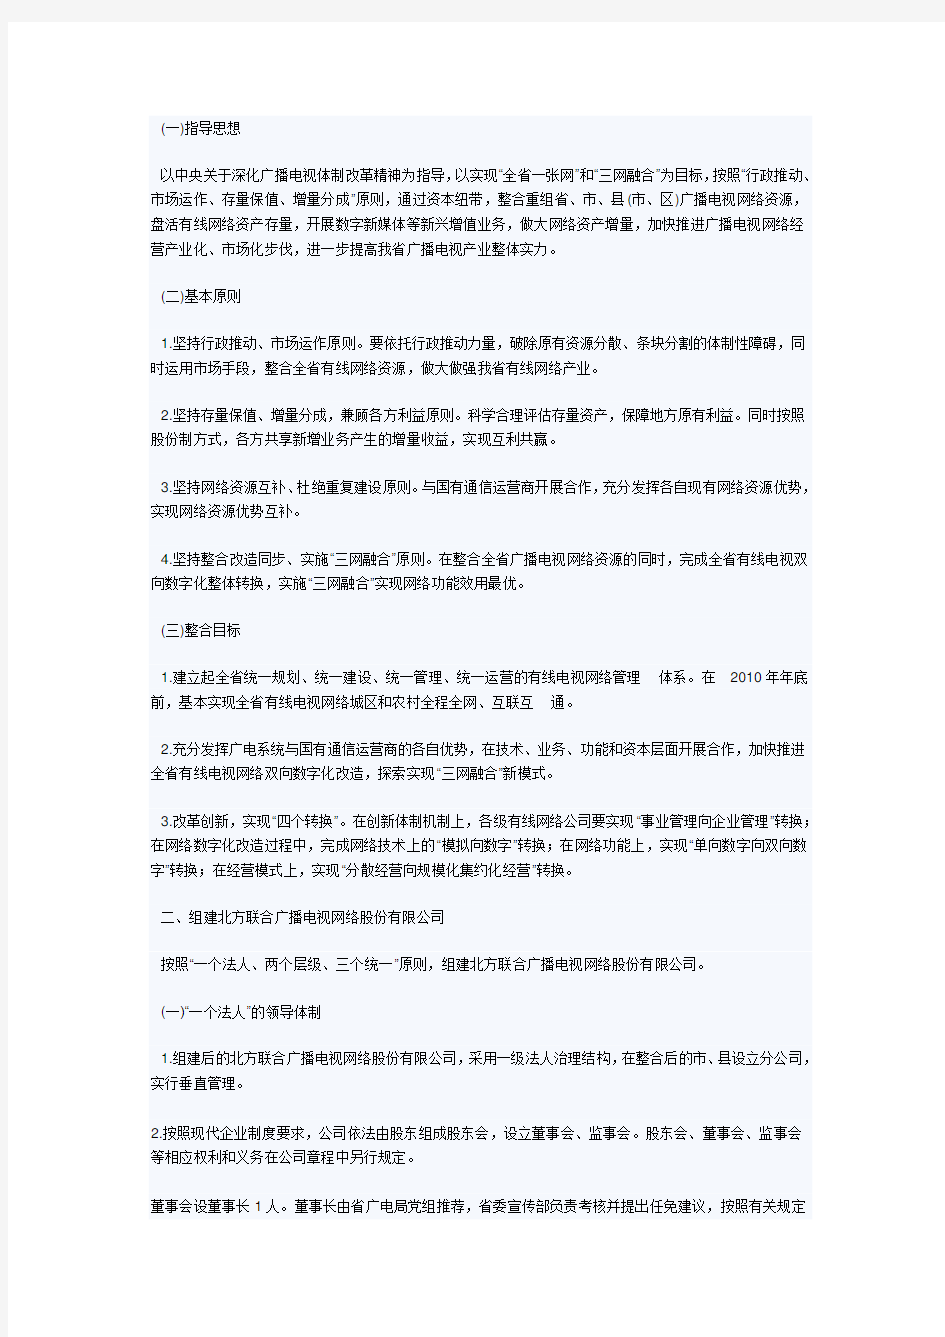 辽宁省广播电视有线网络整合方案